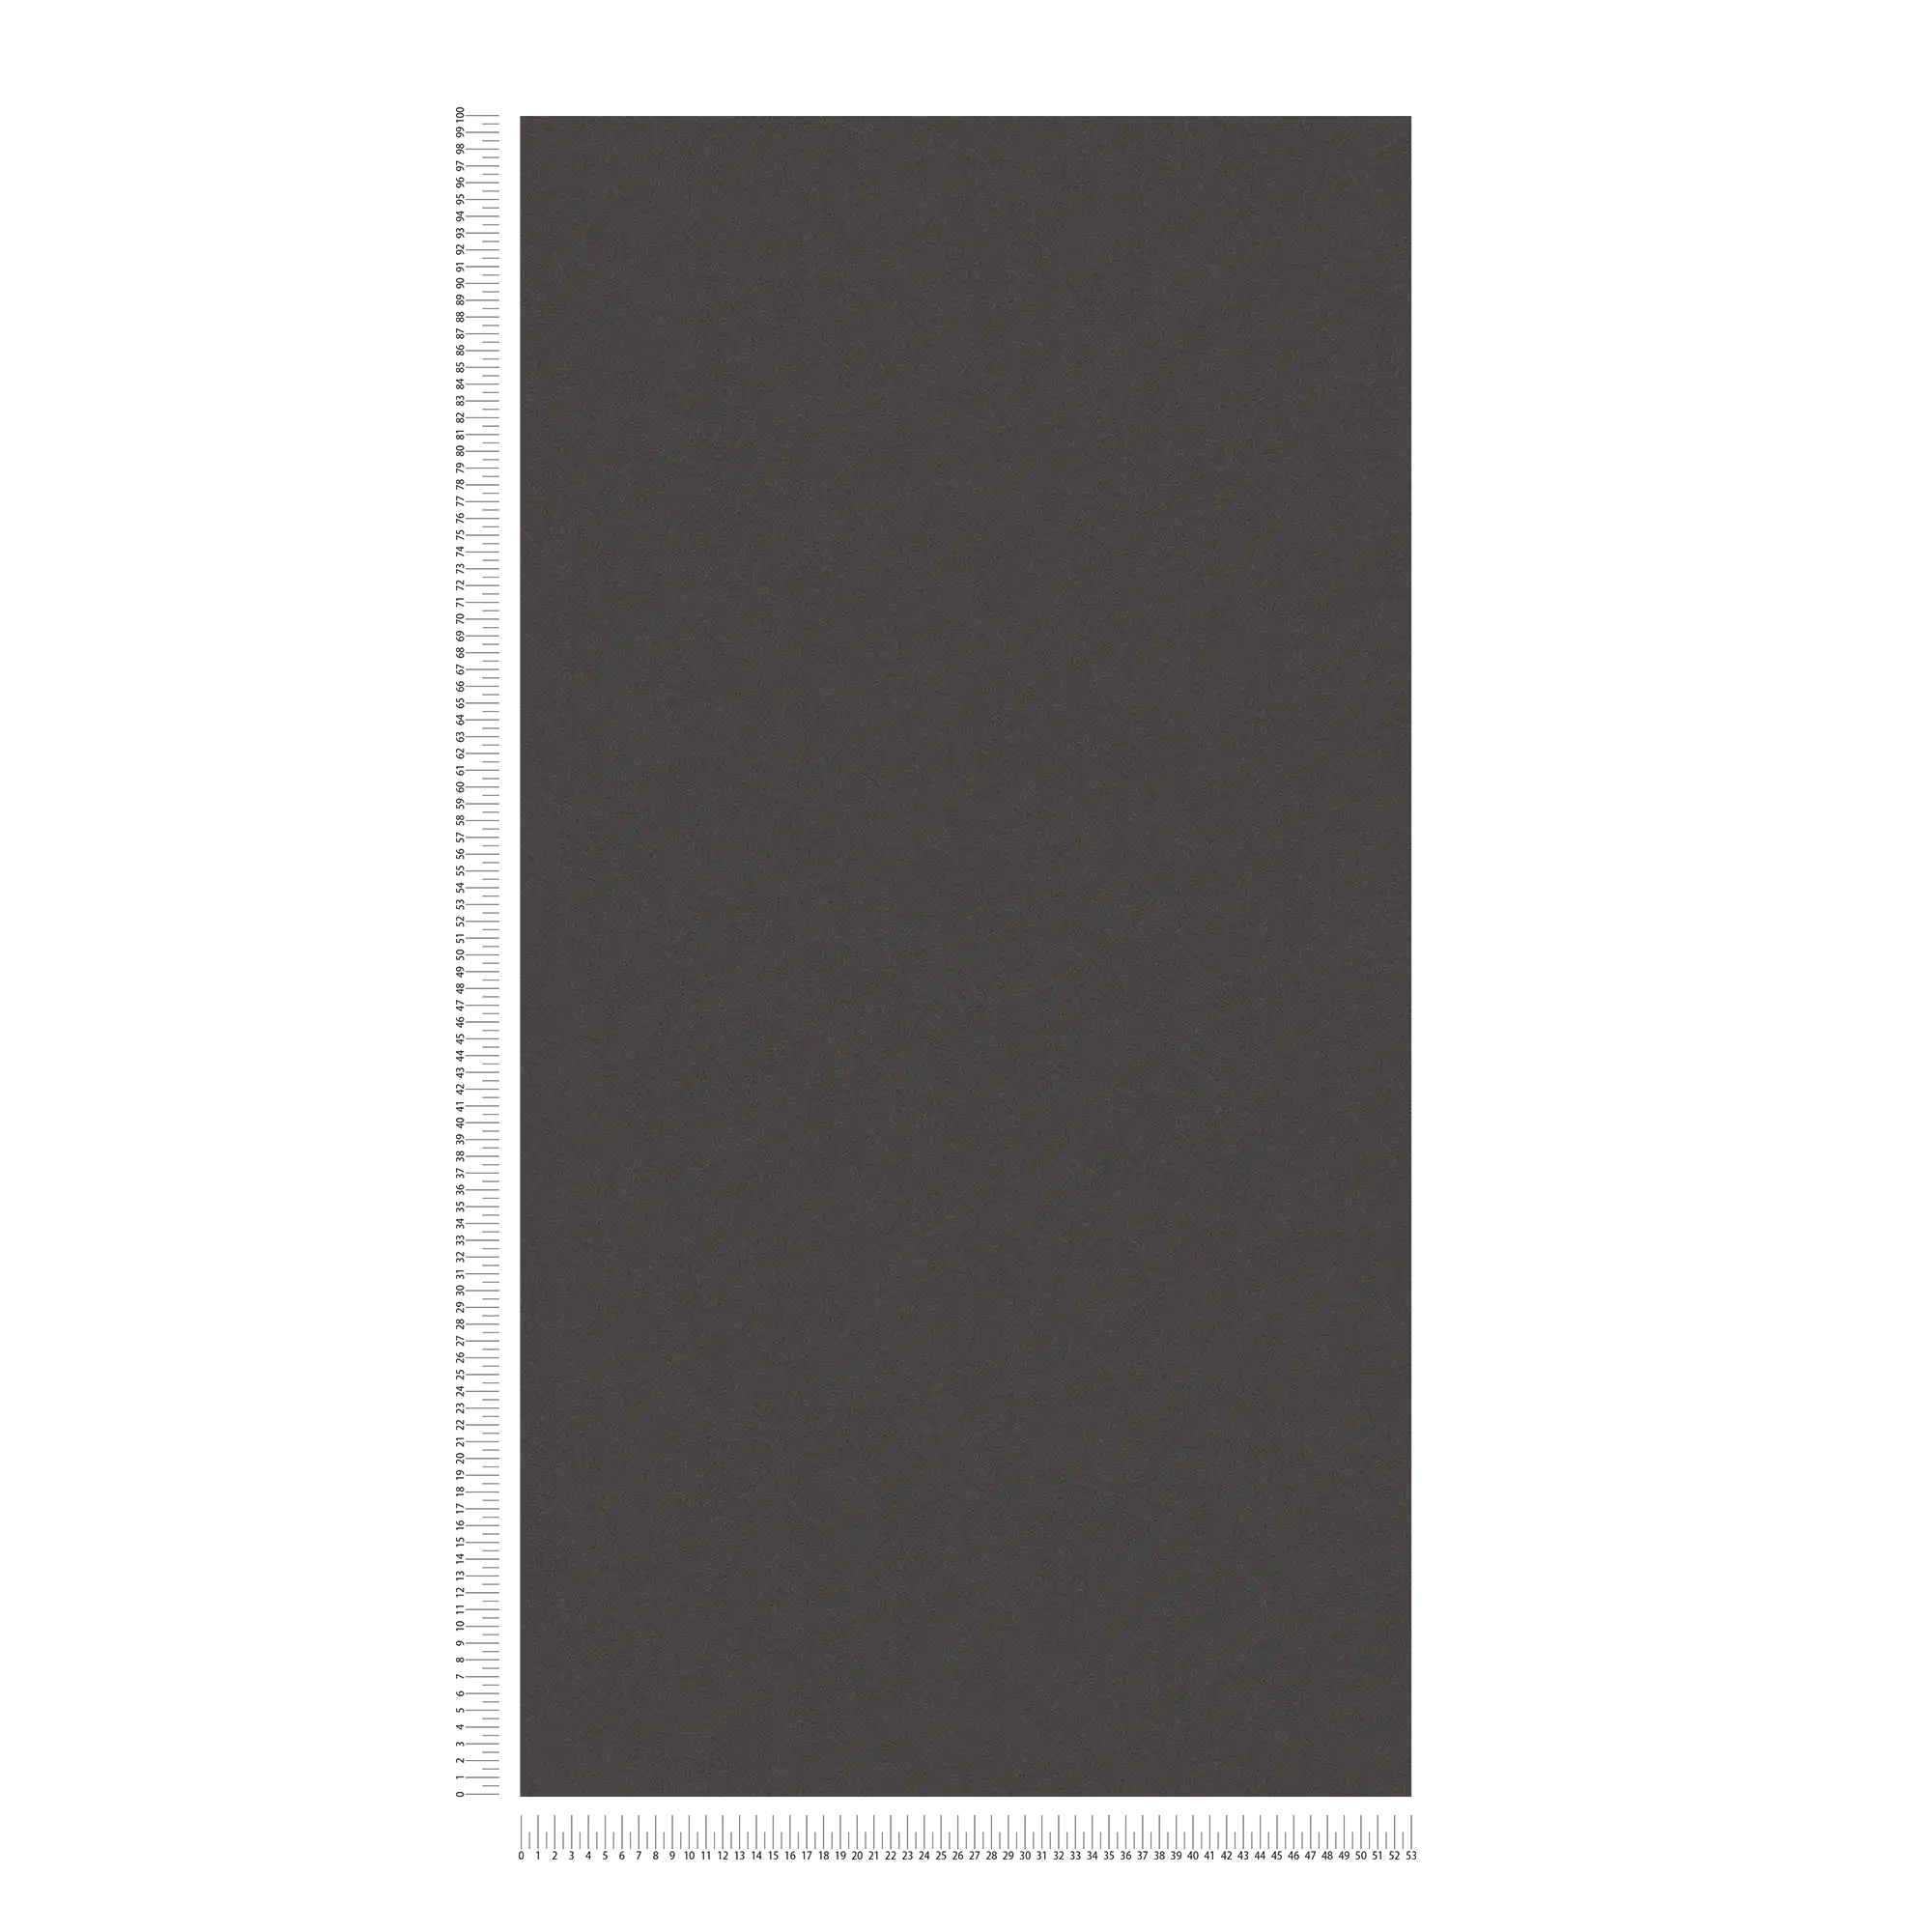             Effen behang met discrete oppervlaktestructuur - zwart
        